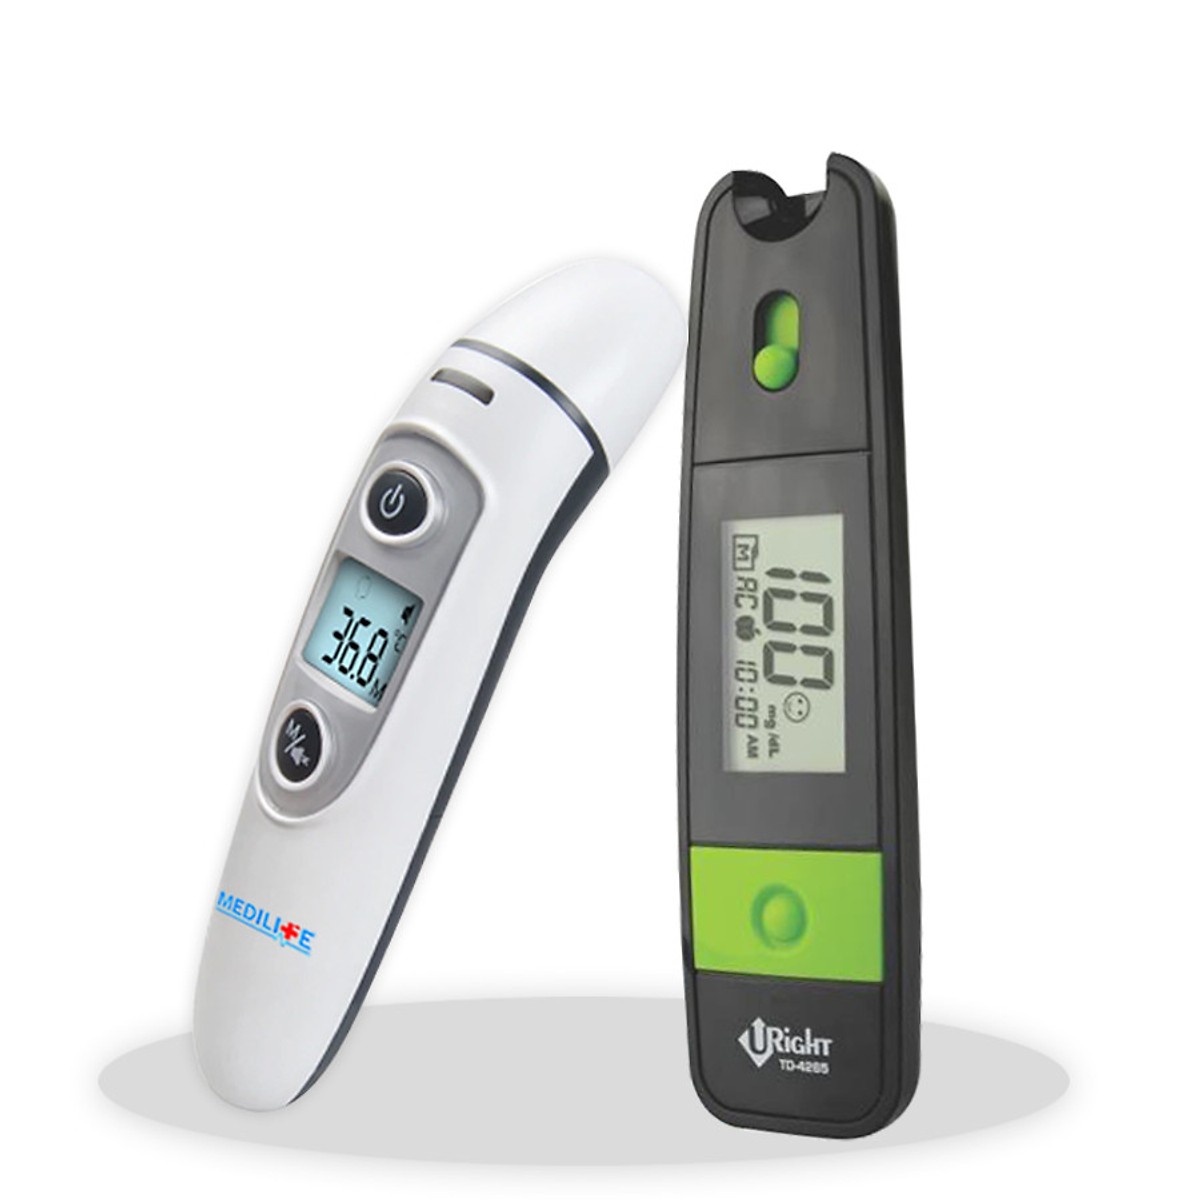 Nhiệt kế điện tử hồng ngoại đo tai và trán Medilife IFR600 + máy đo đường huyết URIGHT 4265